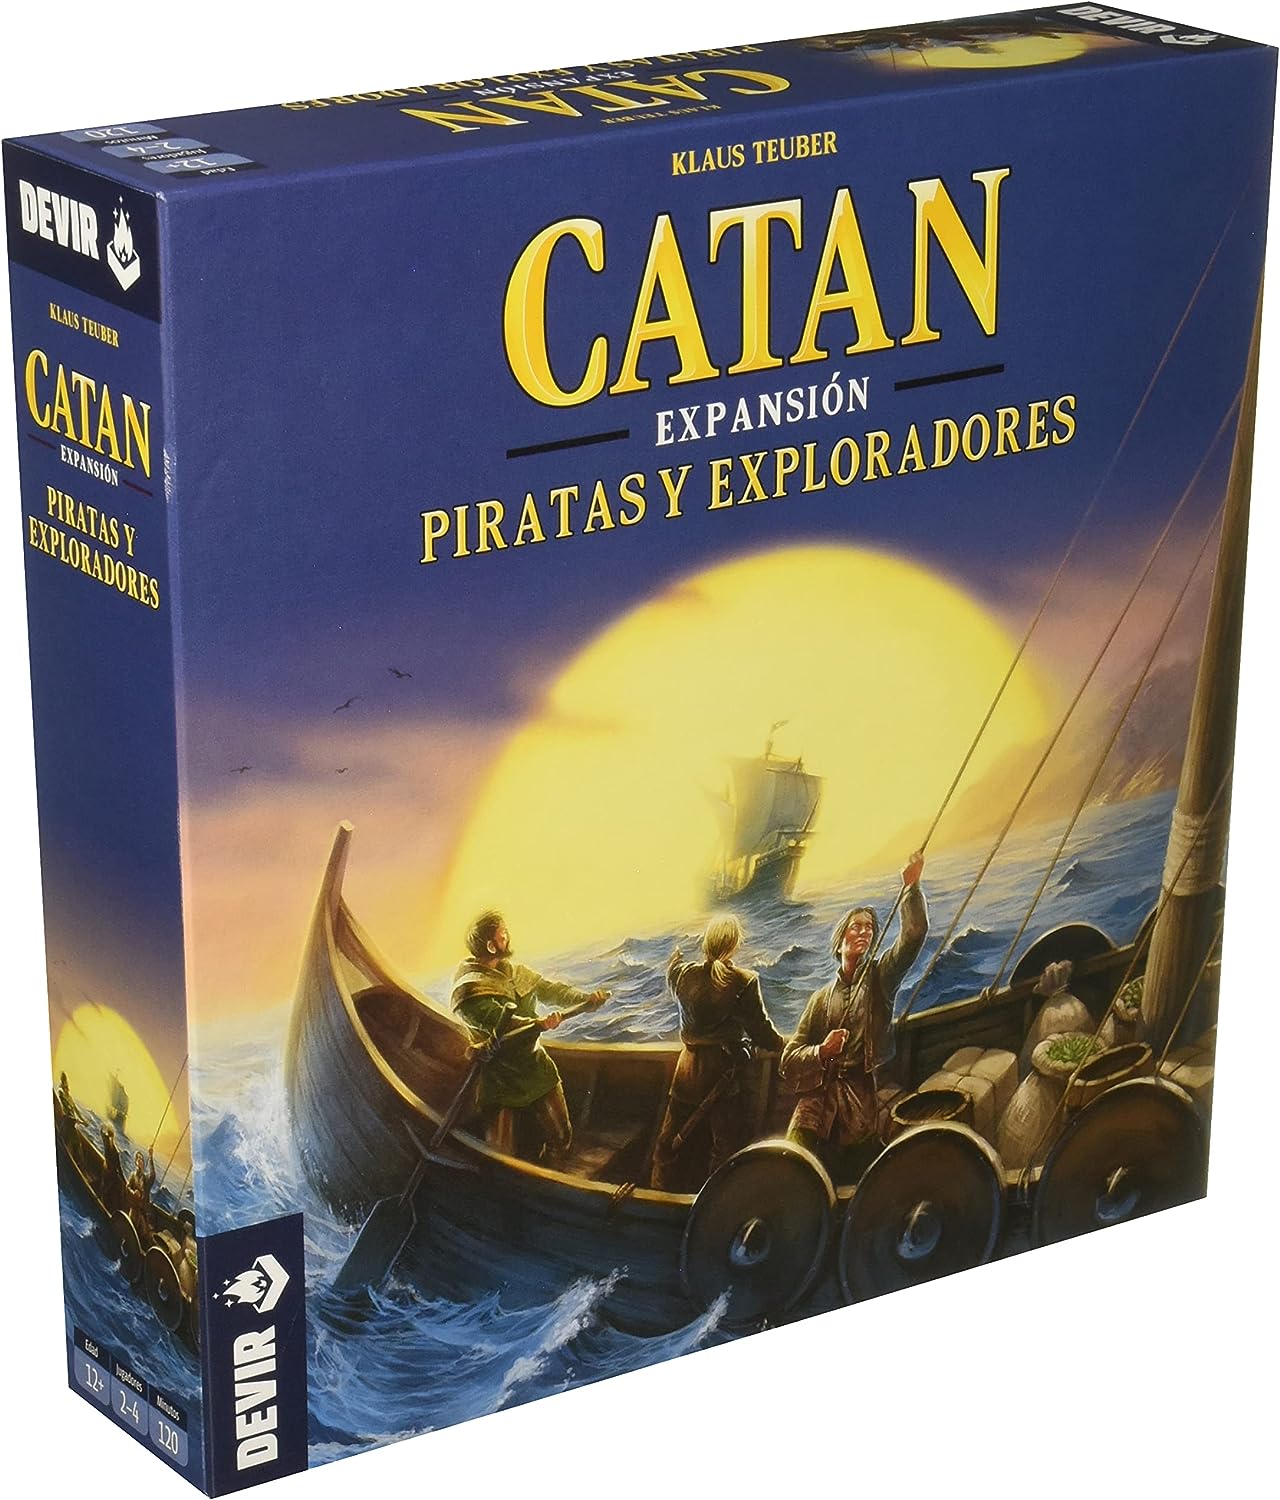 Jeu de Société Catan Pirates et Explorateurs - Thème Colonisation/Commerce - De 2 à 4 Joueurs - Dès 10 Ans - Durée 90min. environ.